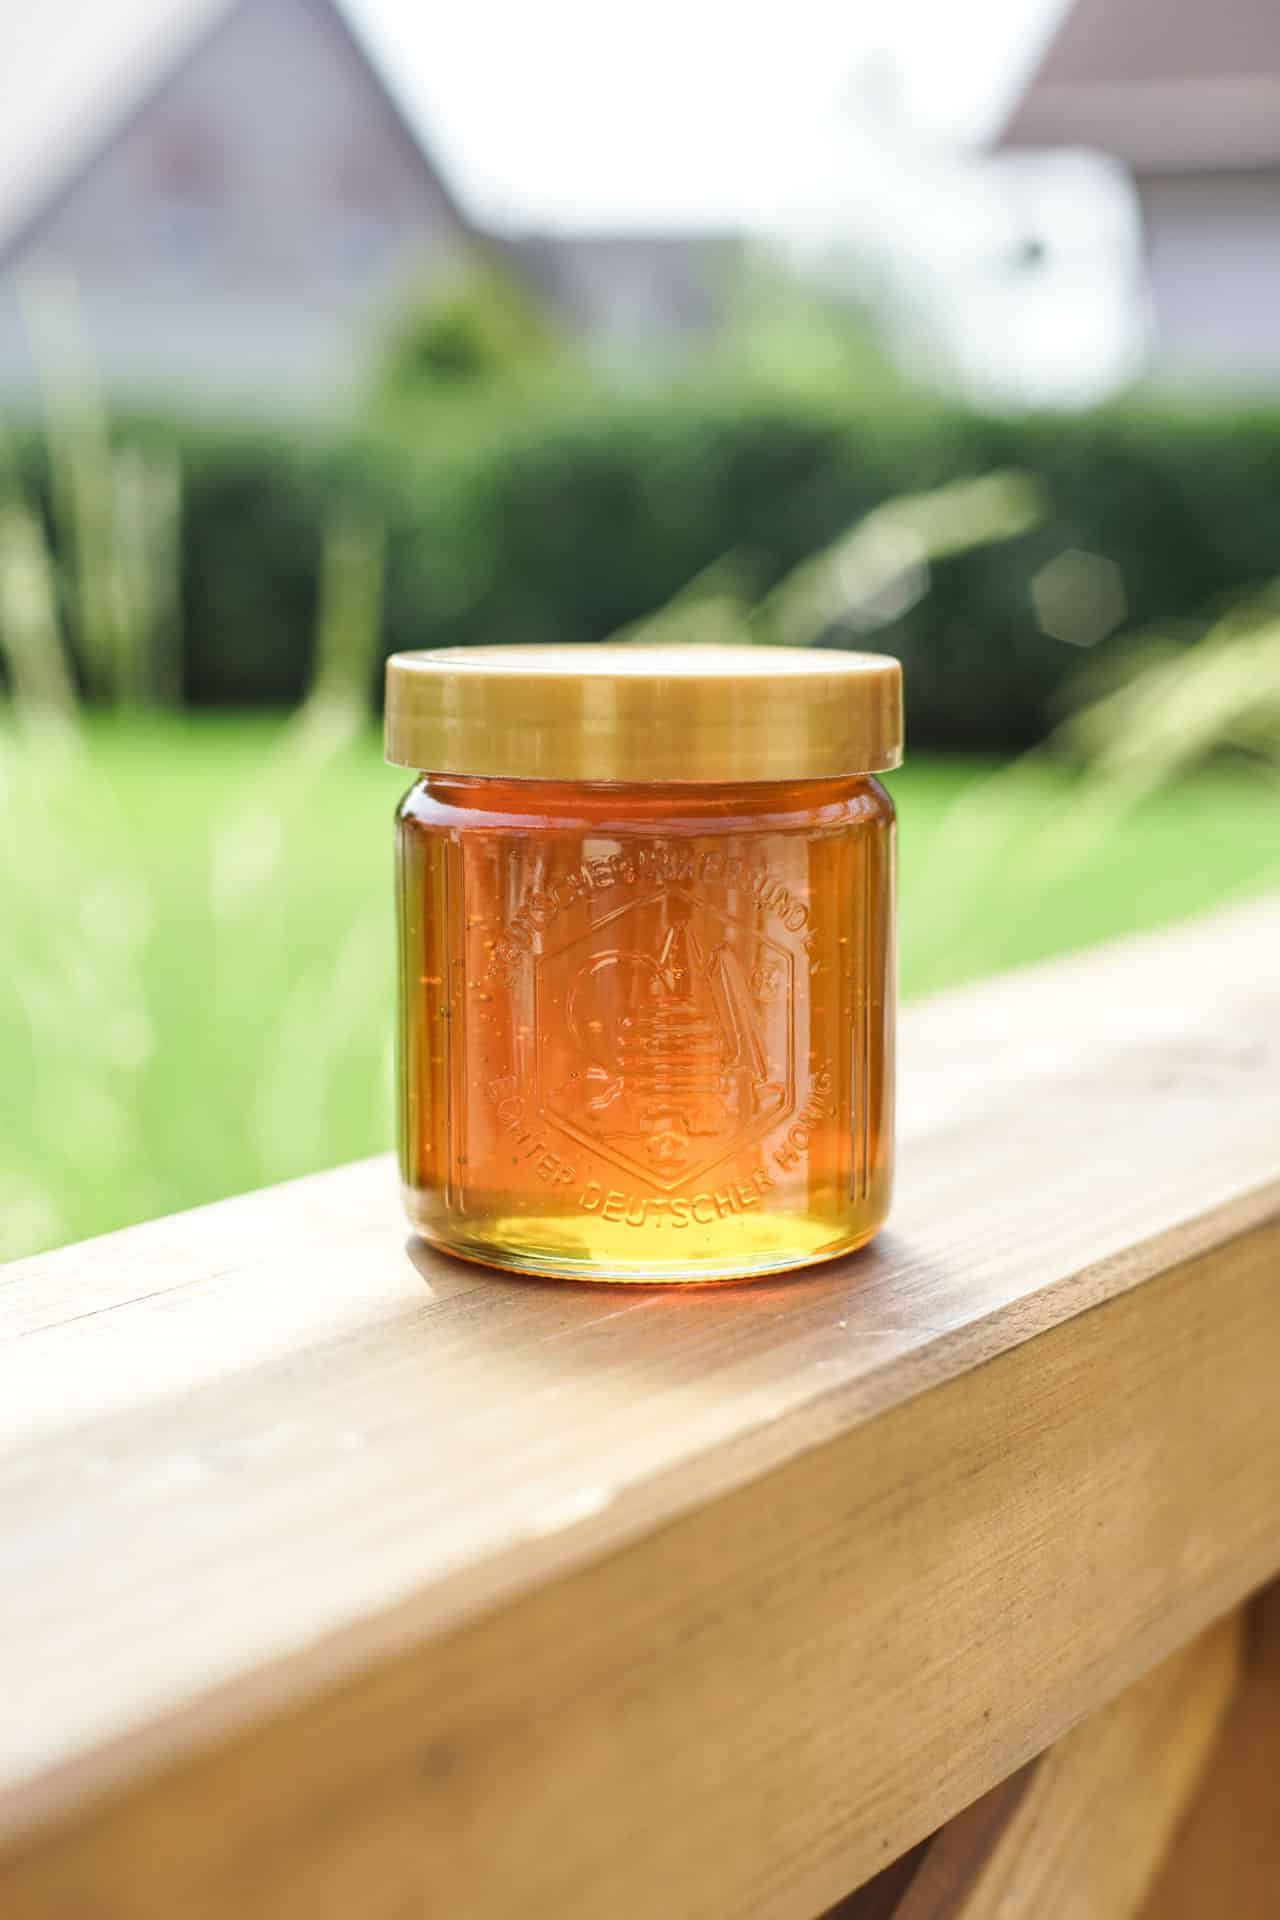 Der Honig kommt so ins Glas, wie ihn die Bienen erzeugen. Bild: Landkreis Neustadt/WN